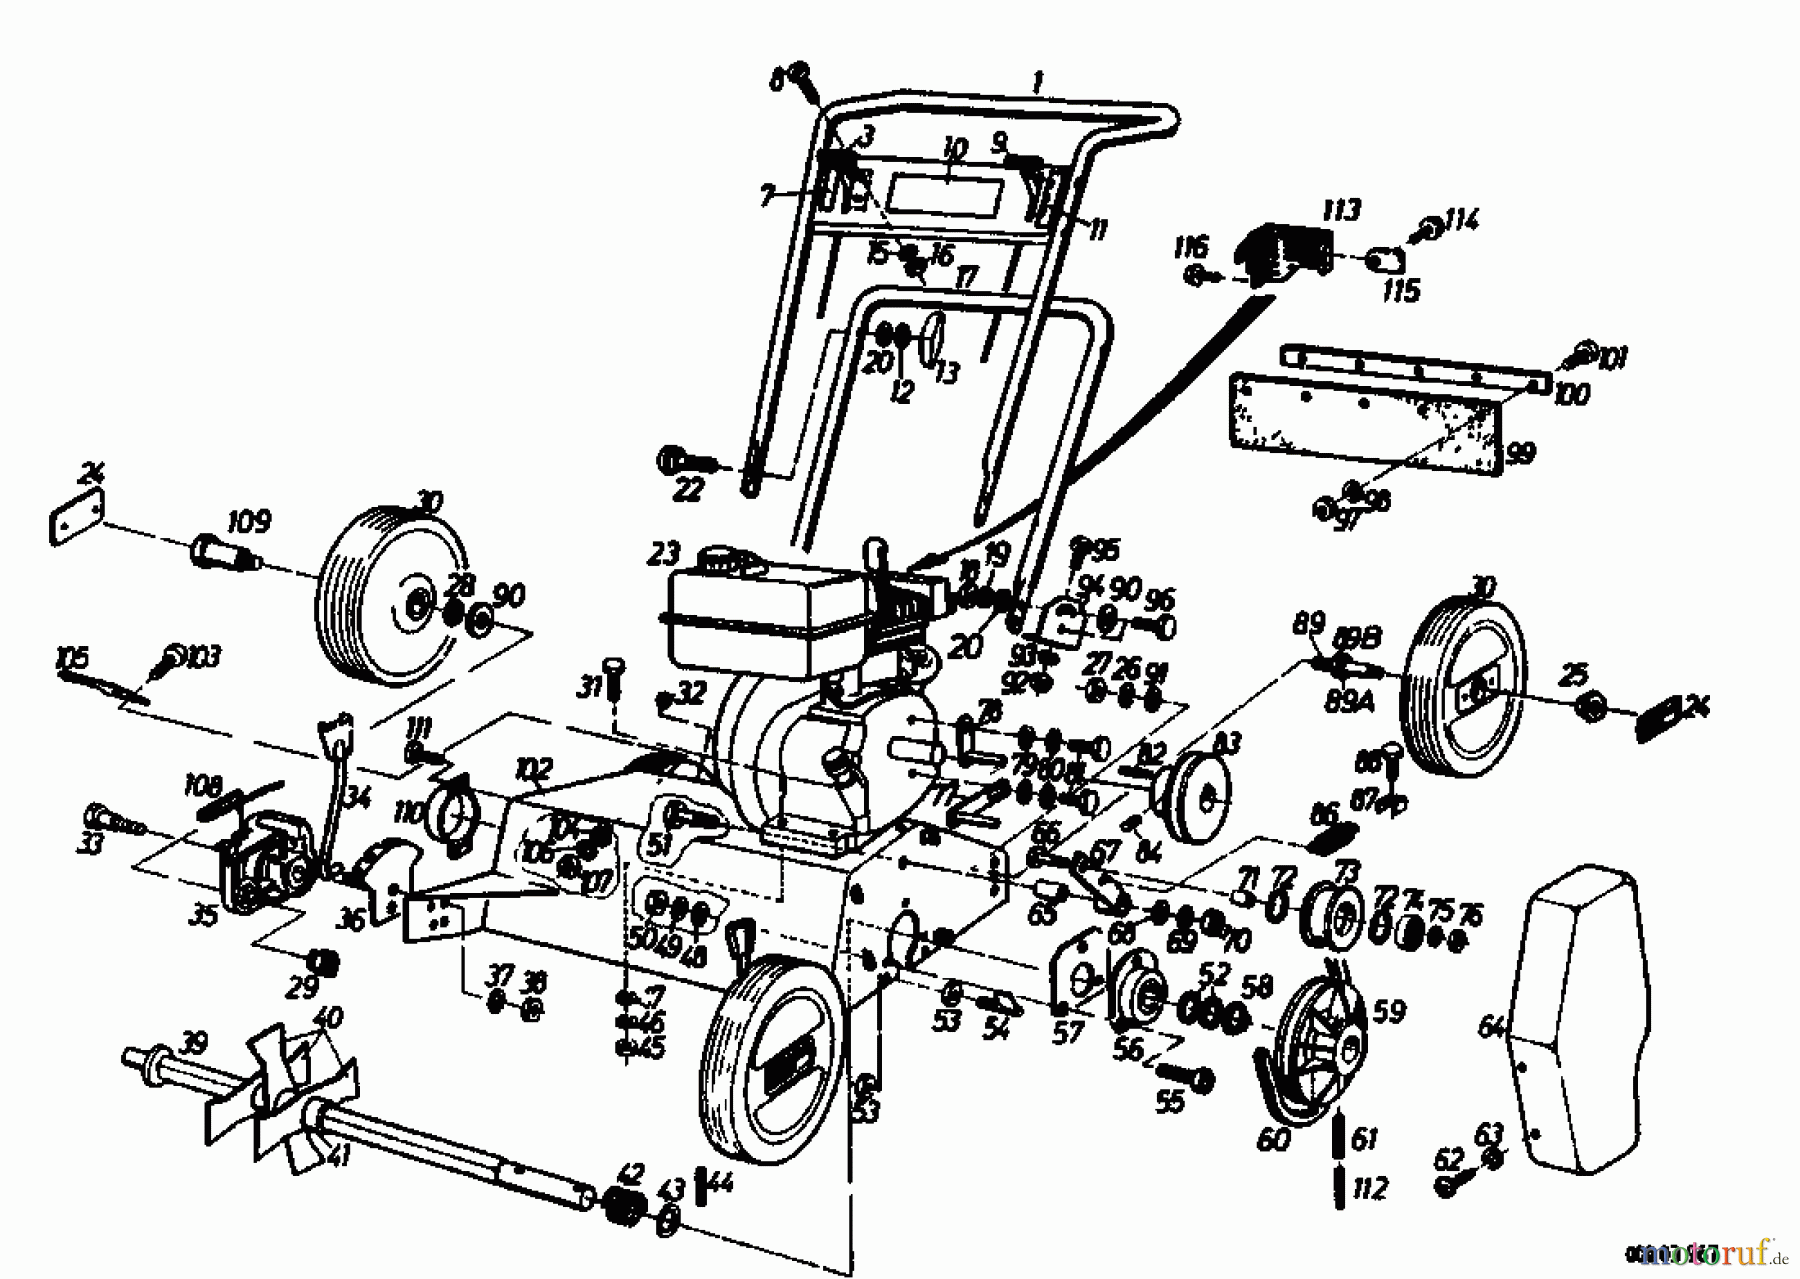  Golf Motorvertikutierer 140 V 4 00054.05  (1988) Grundgerät